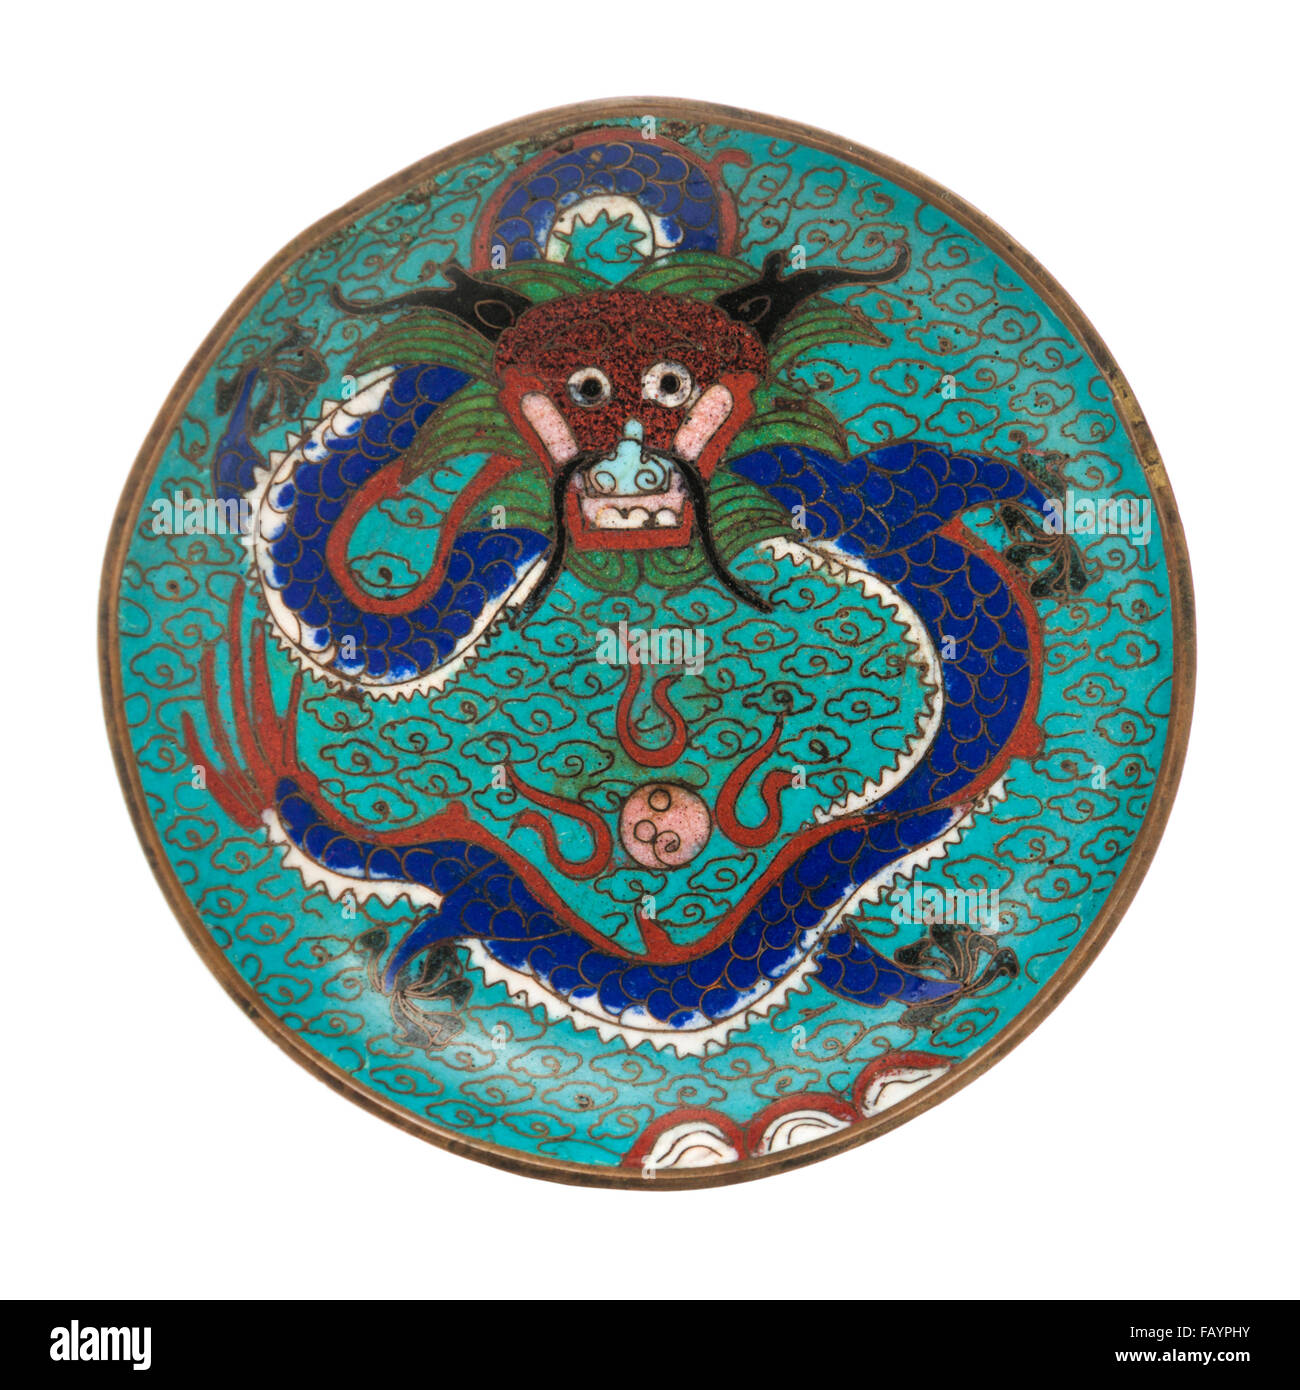 Meubles anciens chinois du 19e siècle plaque émaillée cloisonné avec le dragon chinois Banque D'Images